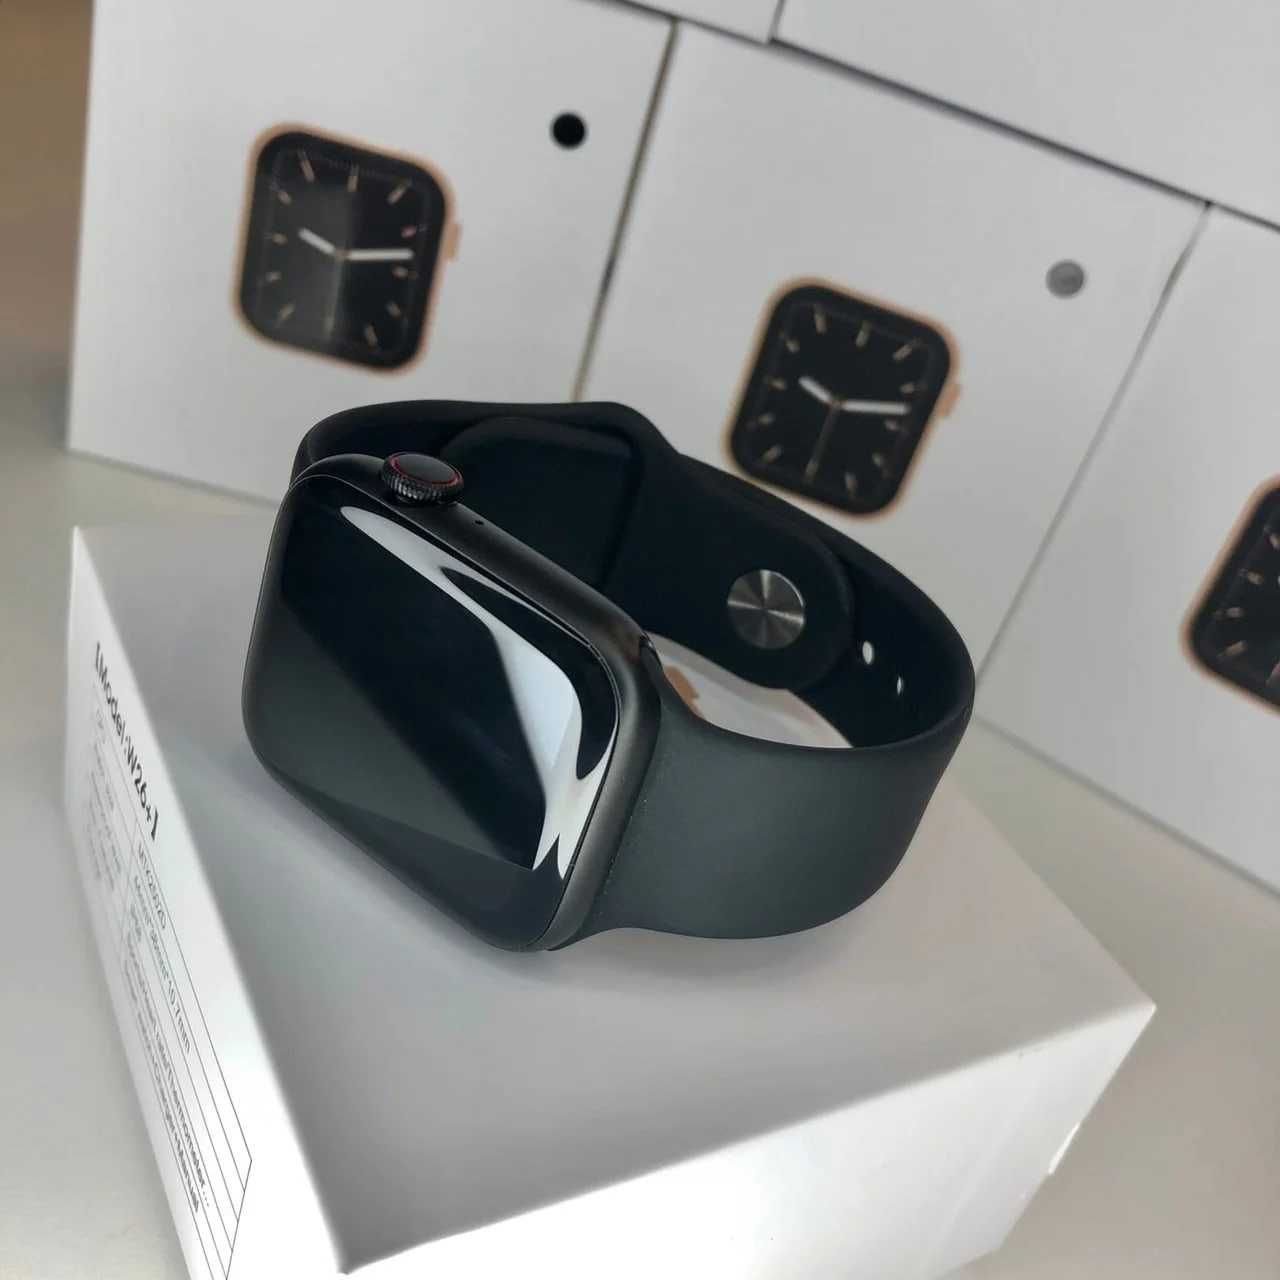 Apple watch w26+, самая низкая цена за эту модель.